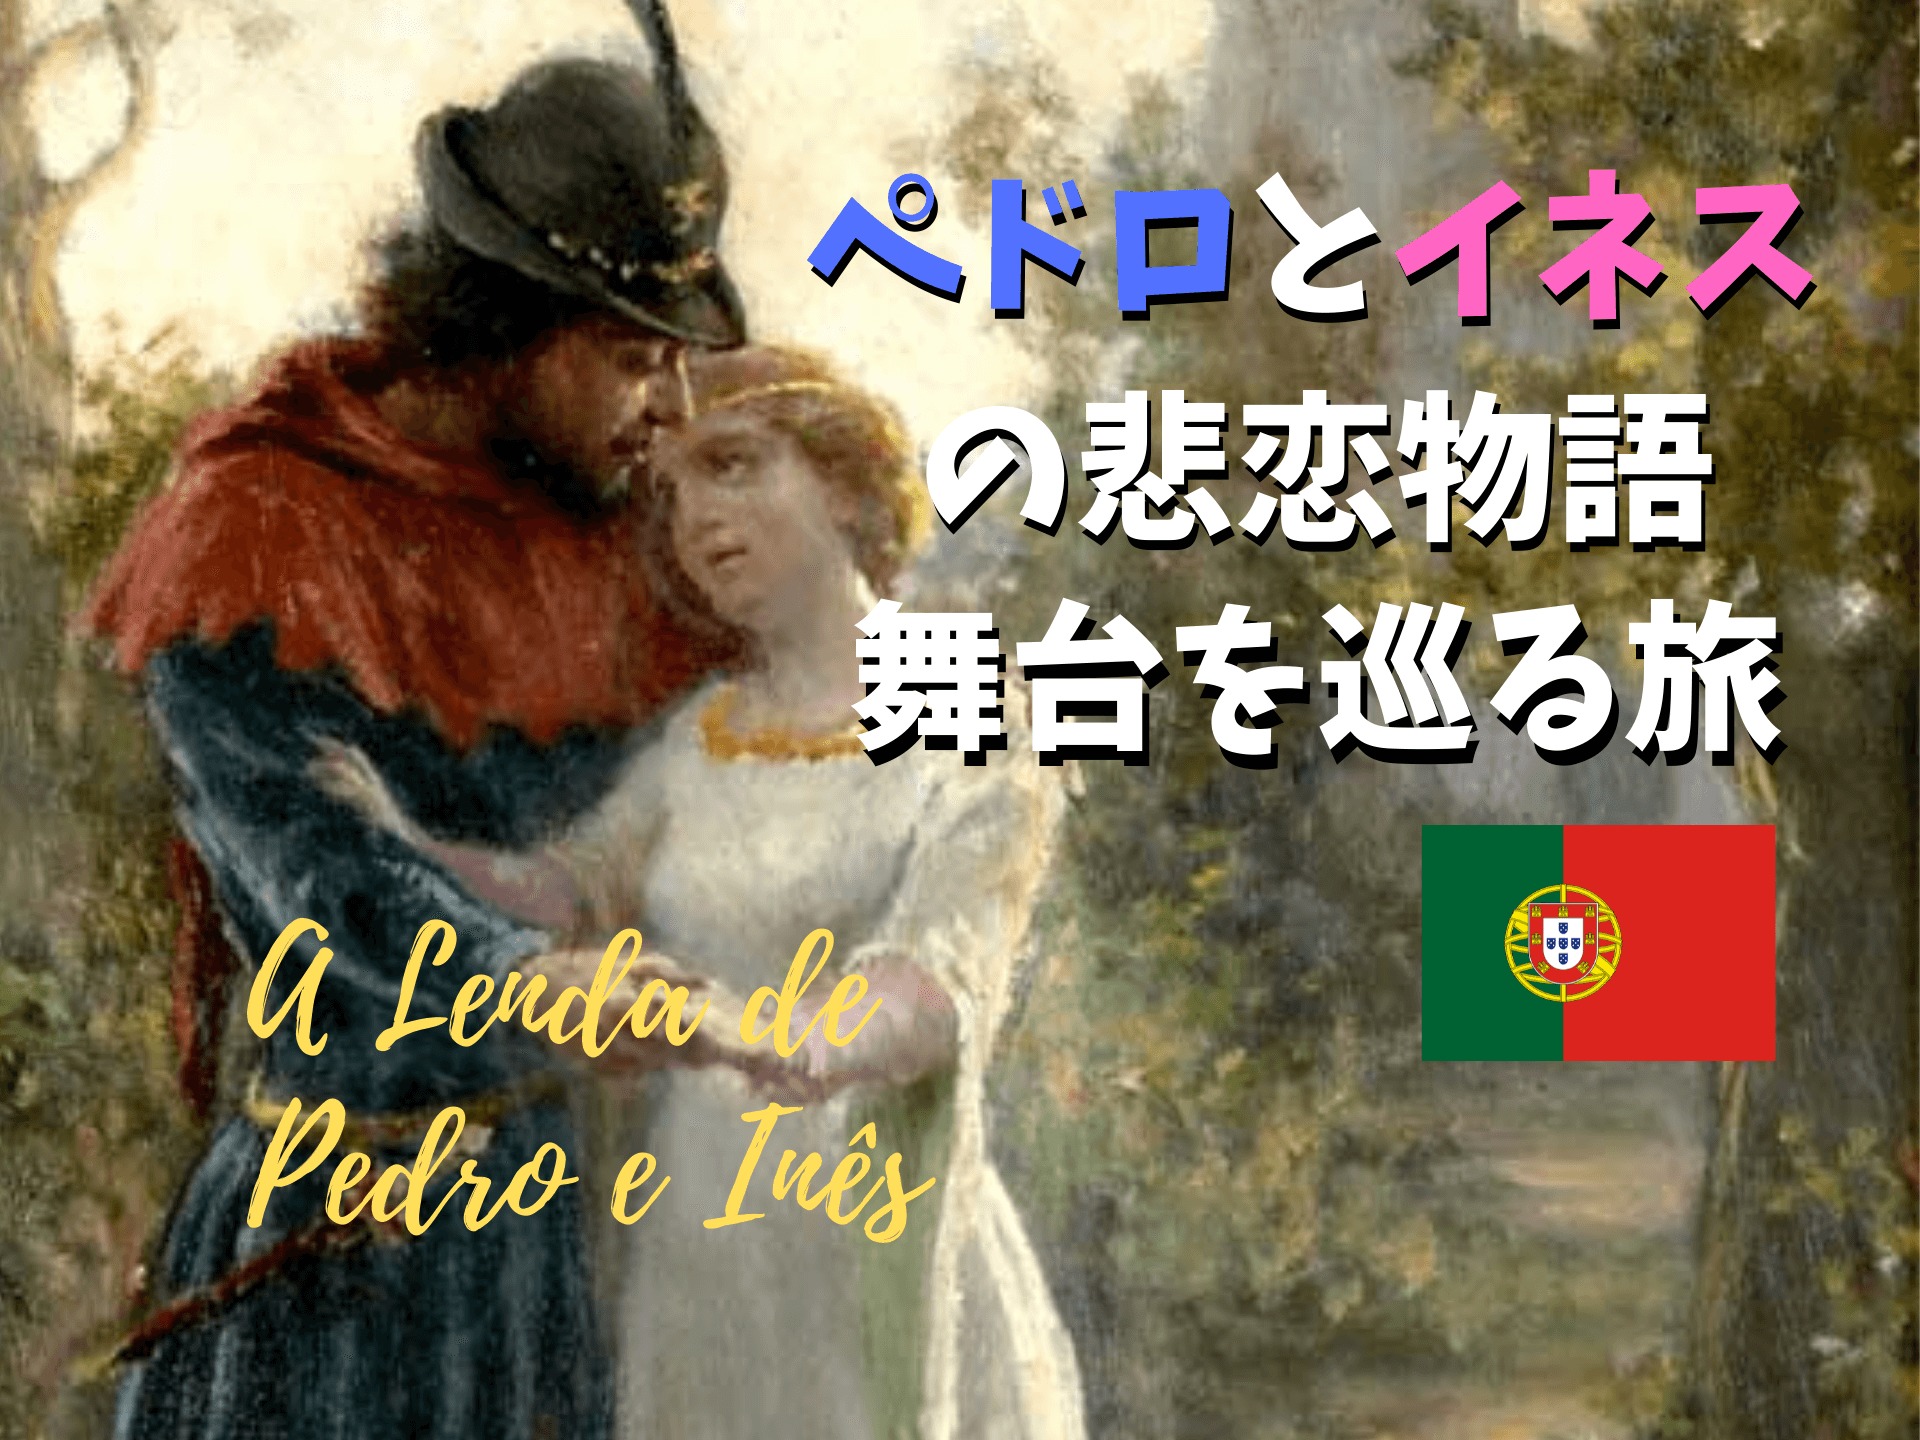 ポルトガル風 狂気のロマンス ペドロとイネスの悲恋物語の舞台をたどる旅のすすめ Ca Voir さぼわーる